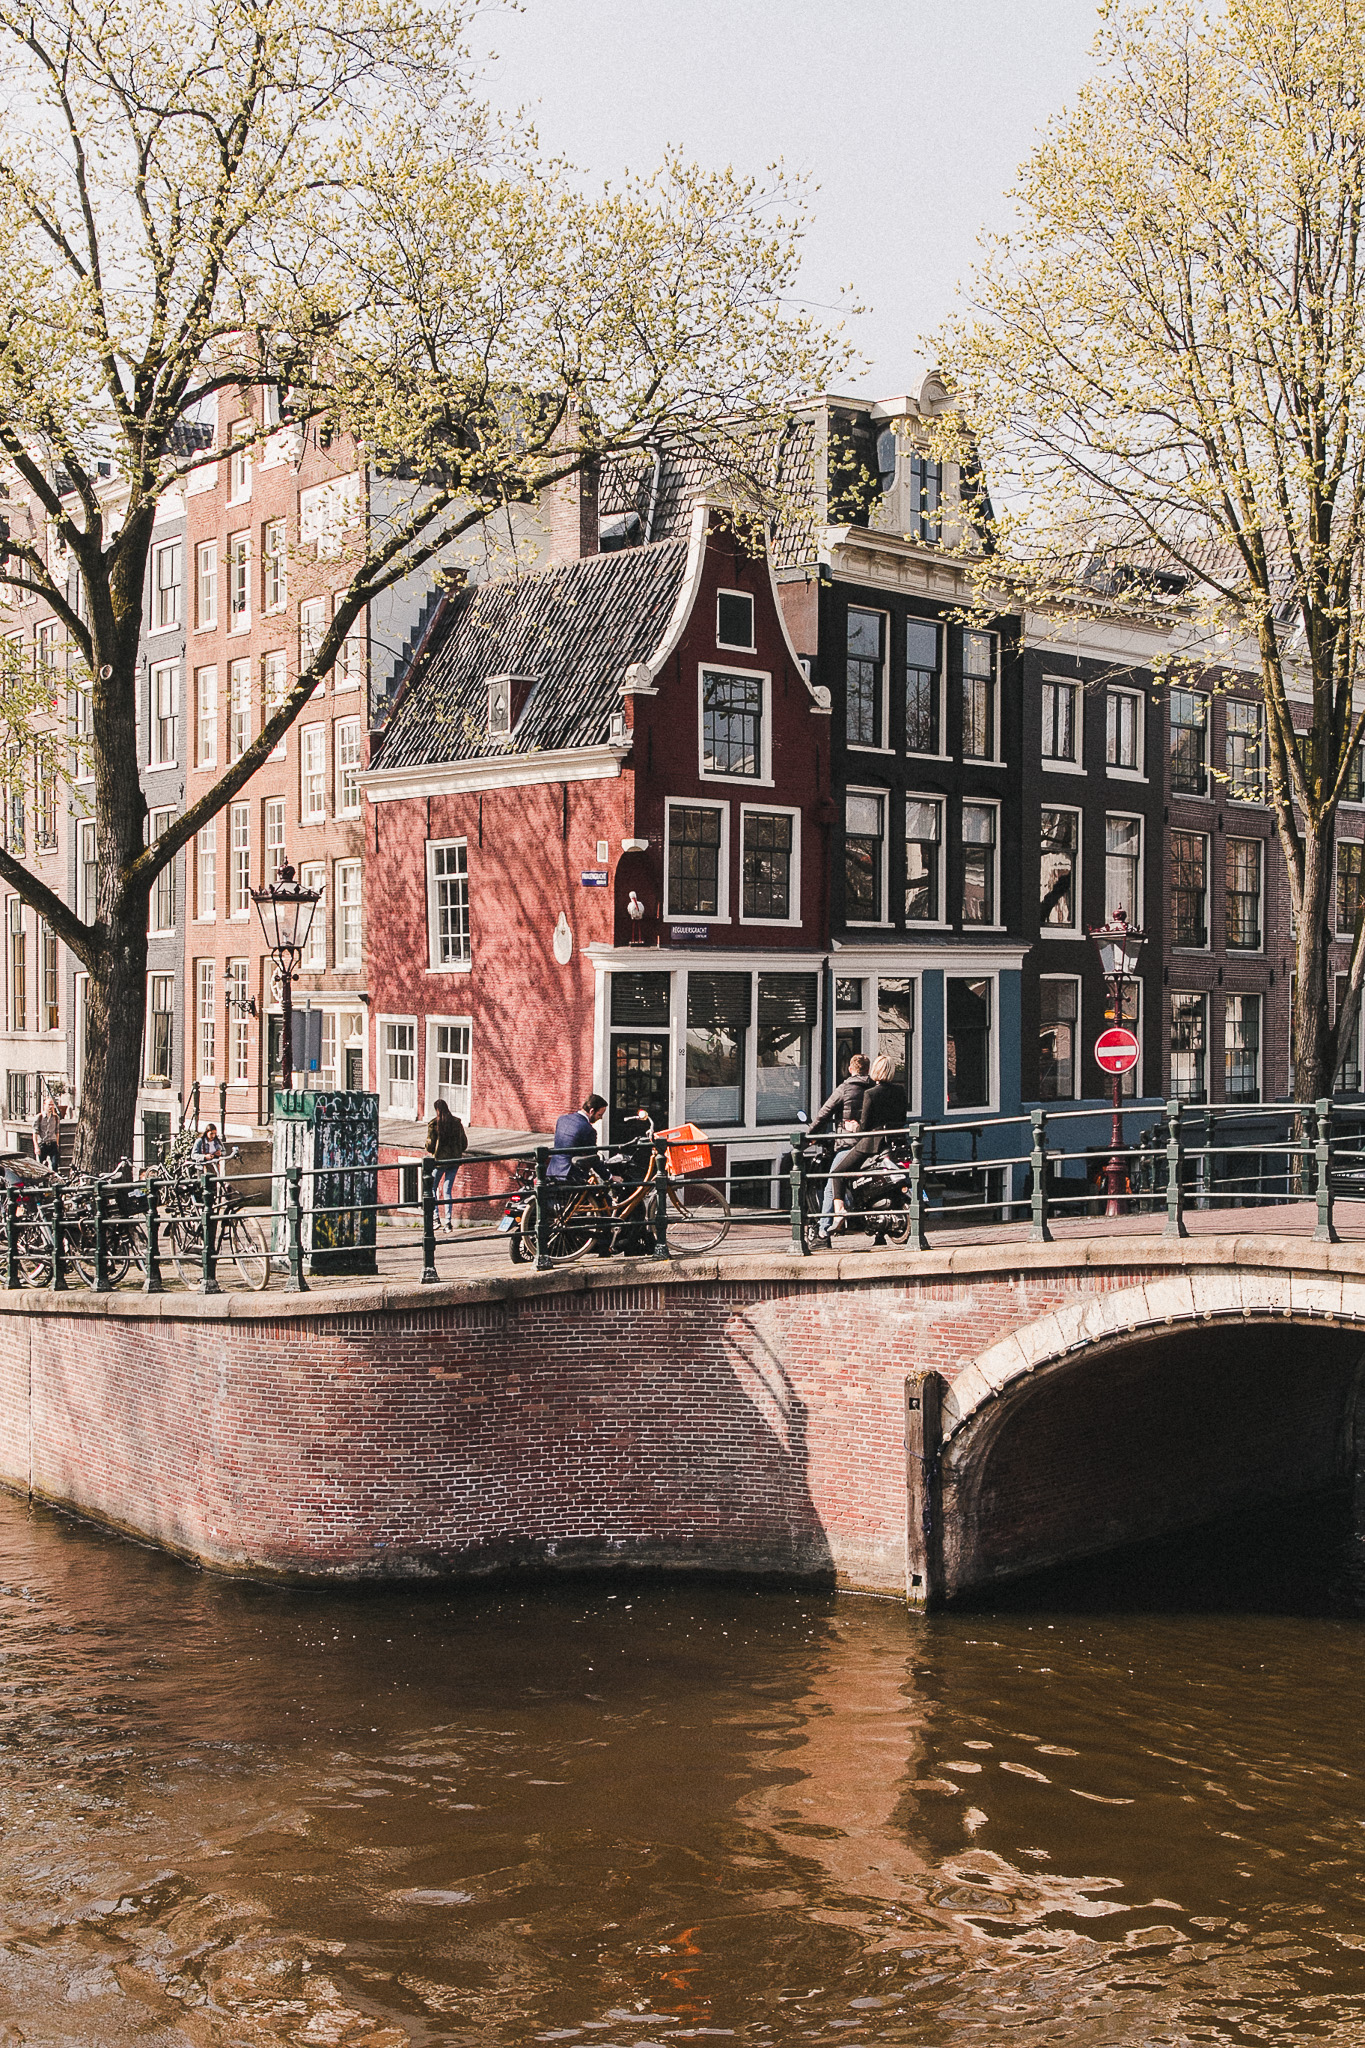 Amsterdam - The Brick Kitchen Amsterdam - The Brick Kitchen